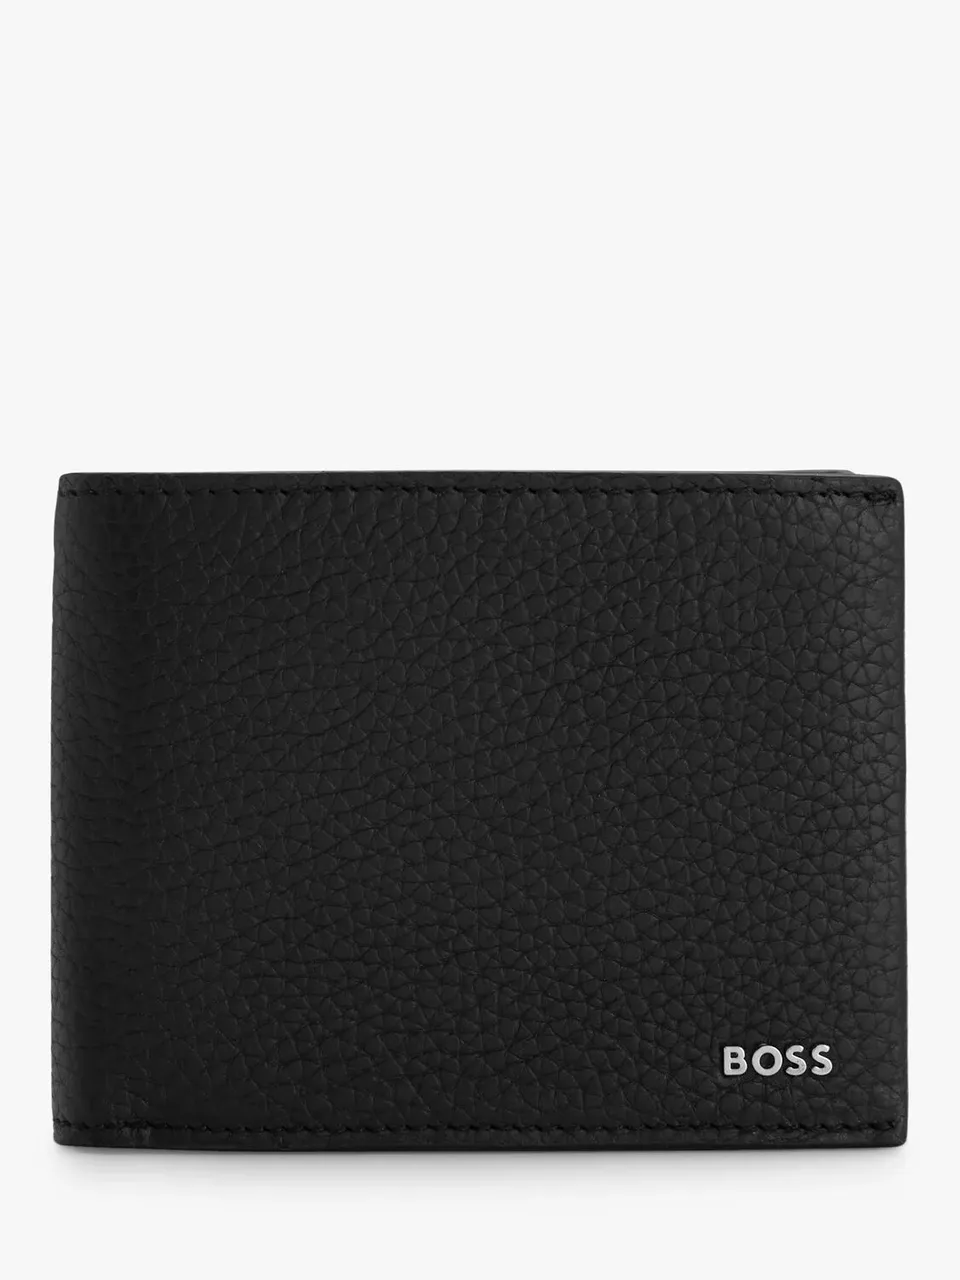 Hugo Boss BOSS Crosstown Pebble Grain Trifold Wallet, Black - Black - Male